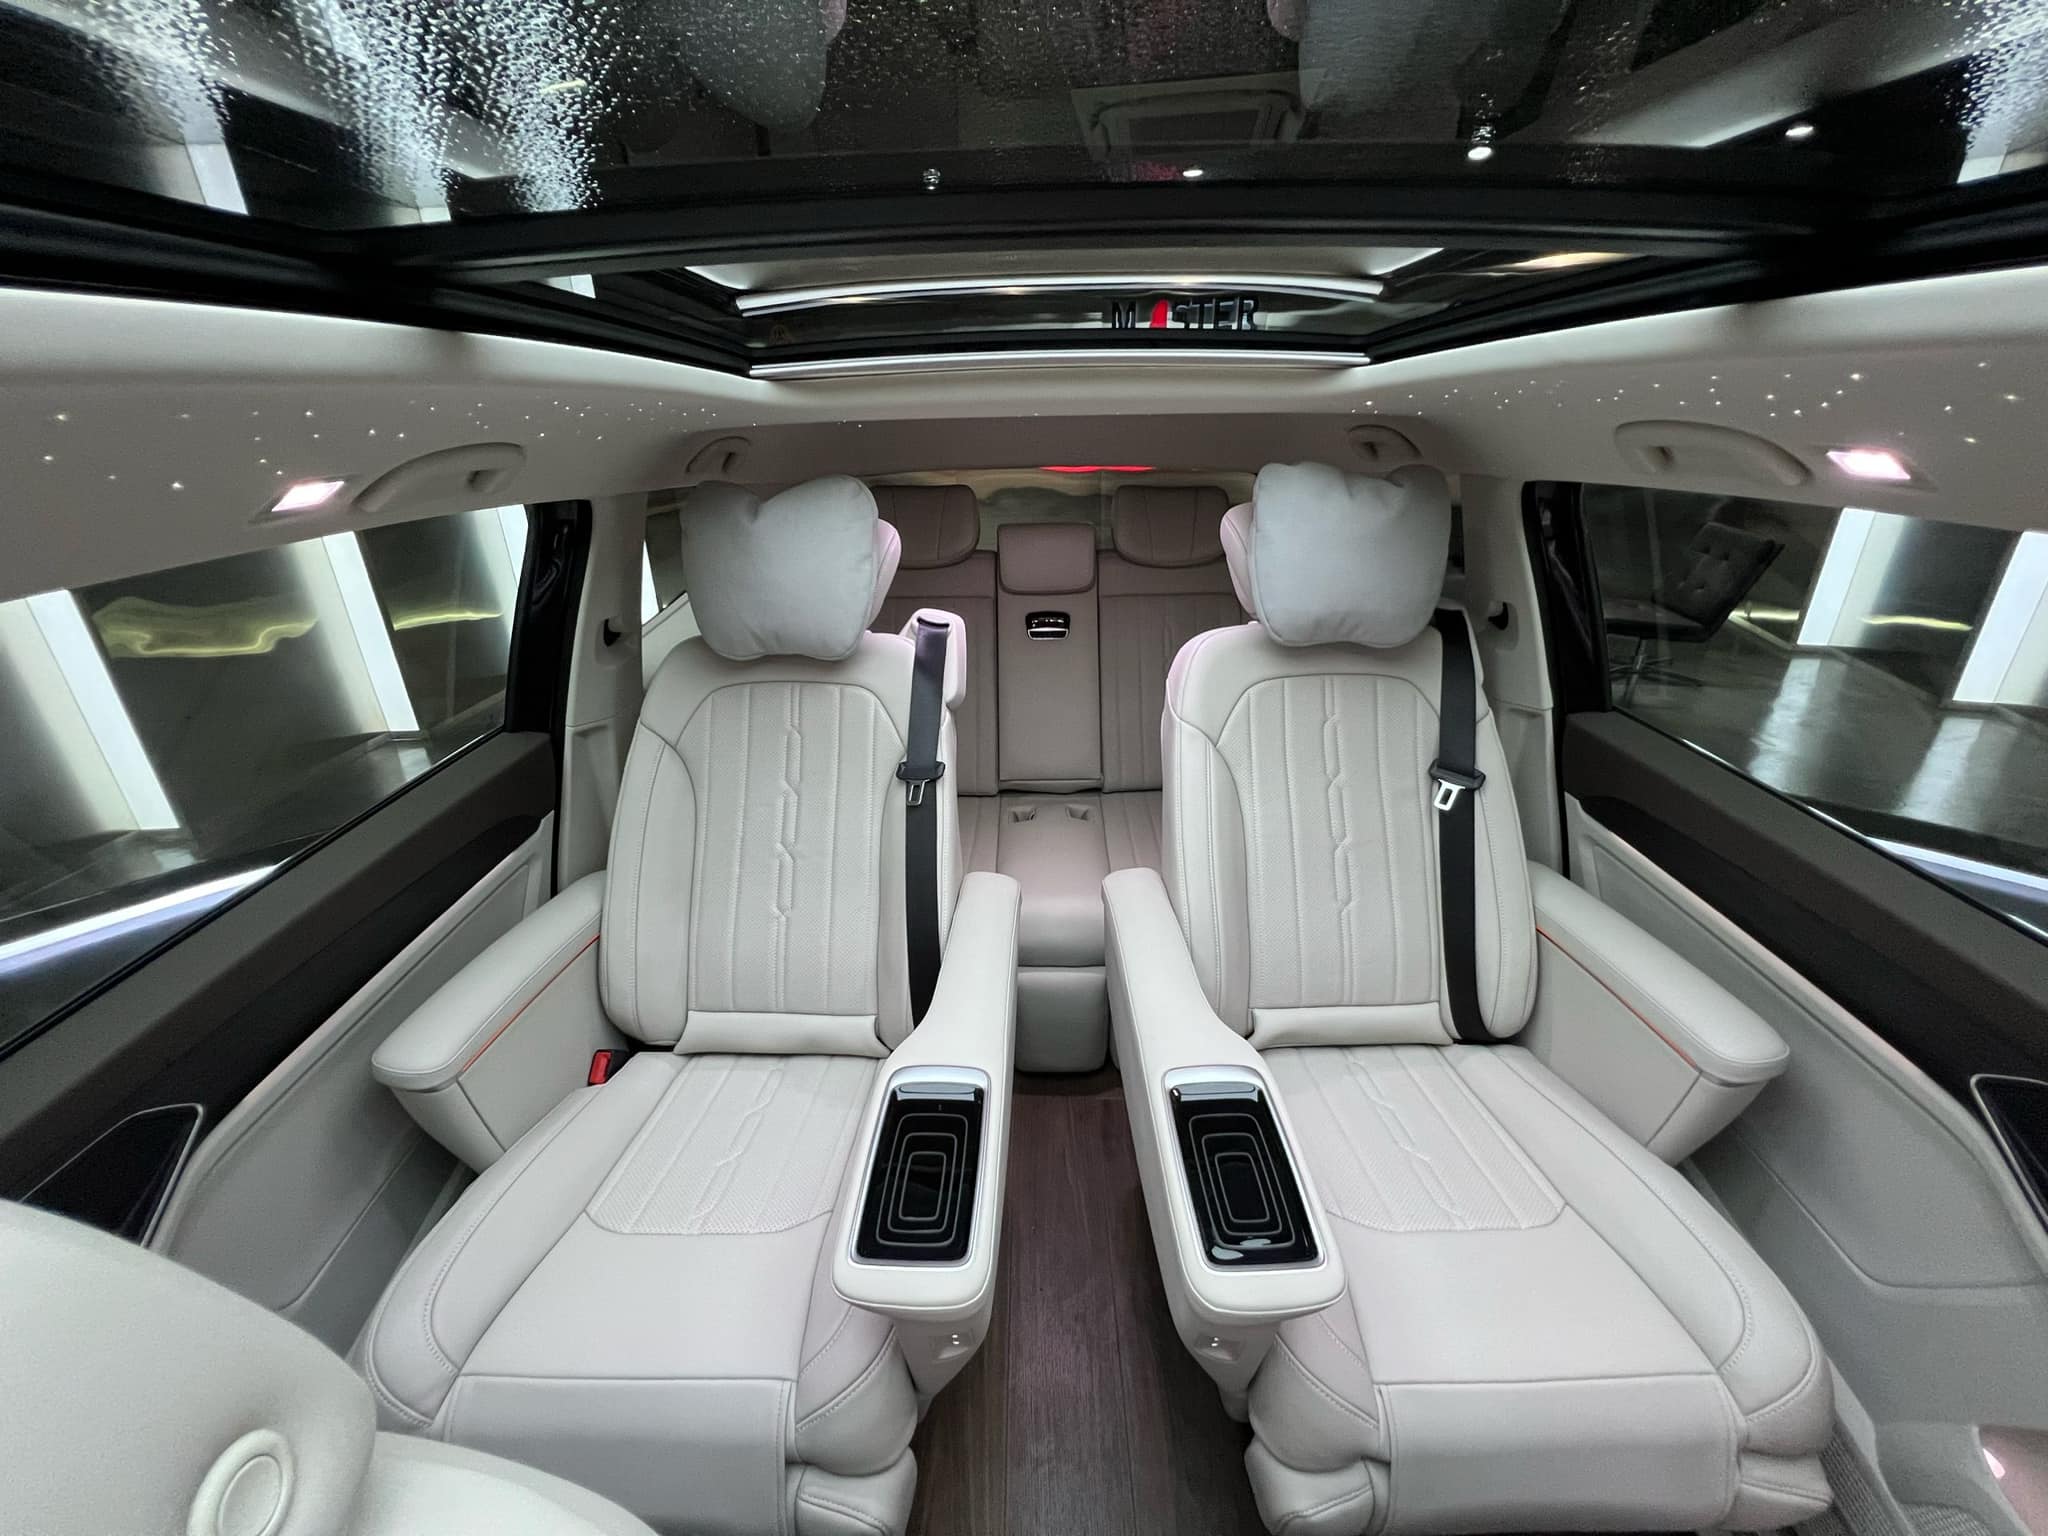 Trấn Thành sắm VW Viloran bản base nhưng có trang bị khủng hơn bản full: Ghế thương gia xoay 360 độ, sàn gỗ, trần sao kiểu Rolls-Royce